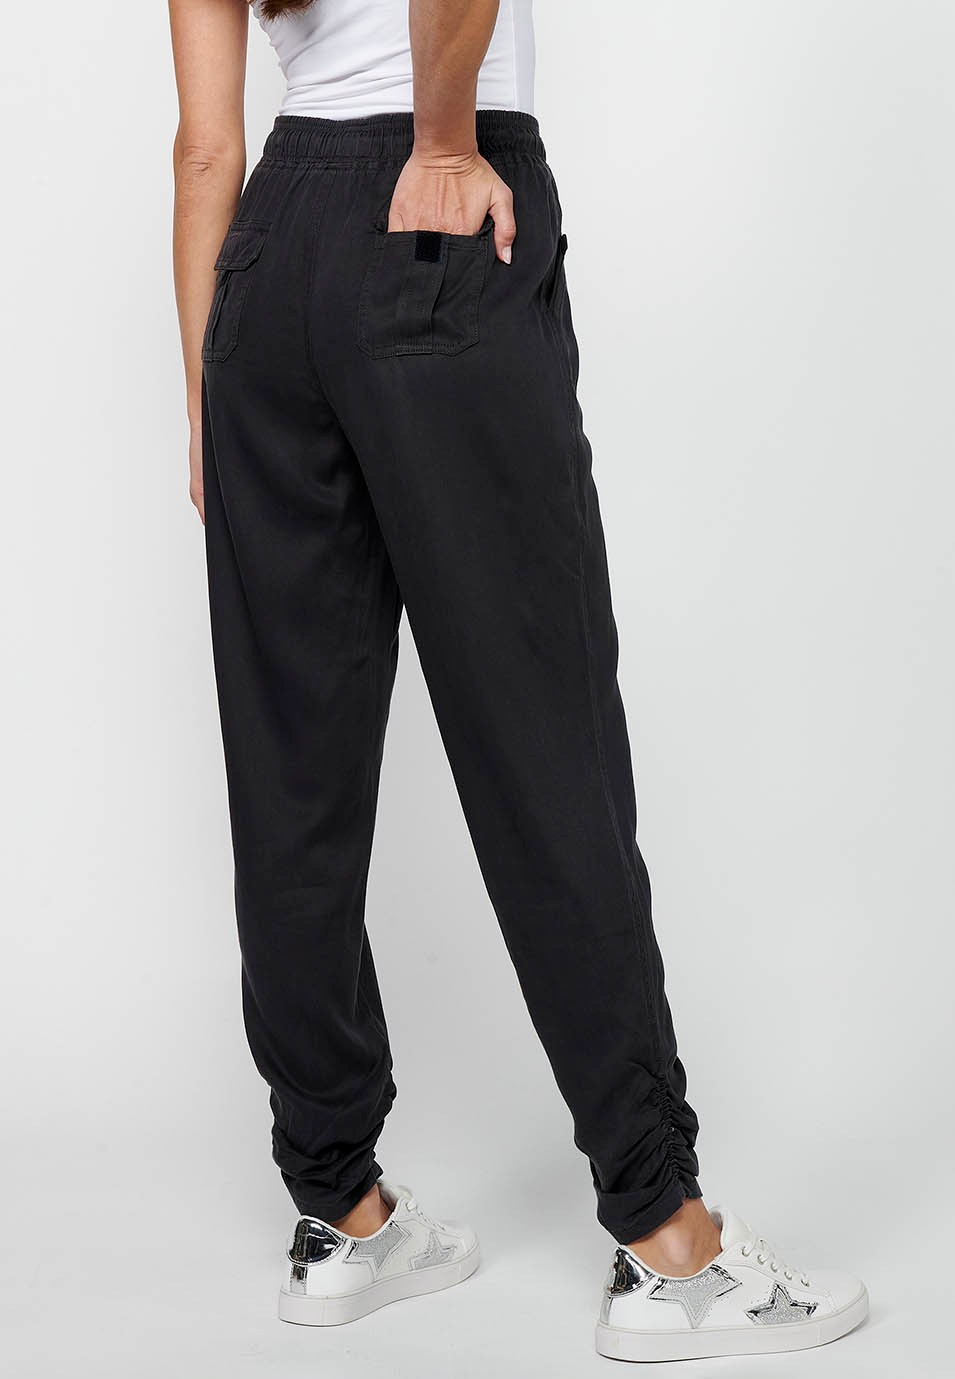 Pantalón largo jogger con Acabado rizado y Cintura engomada con Cuatro bolsillos, dos traseros con solapa de Color Negro para Mujer 1